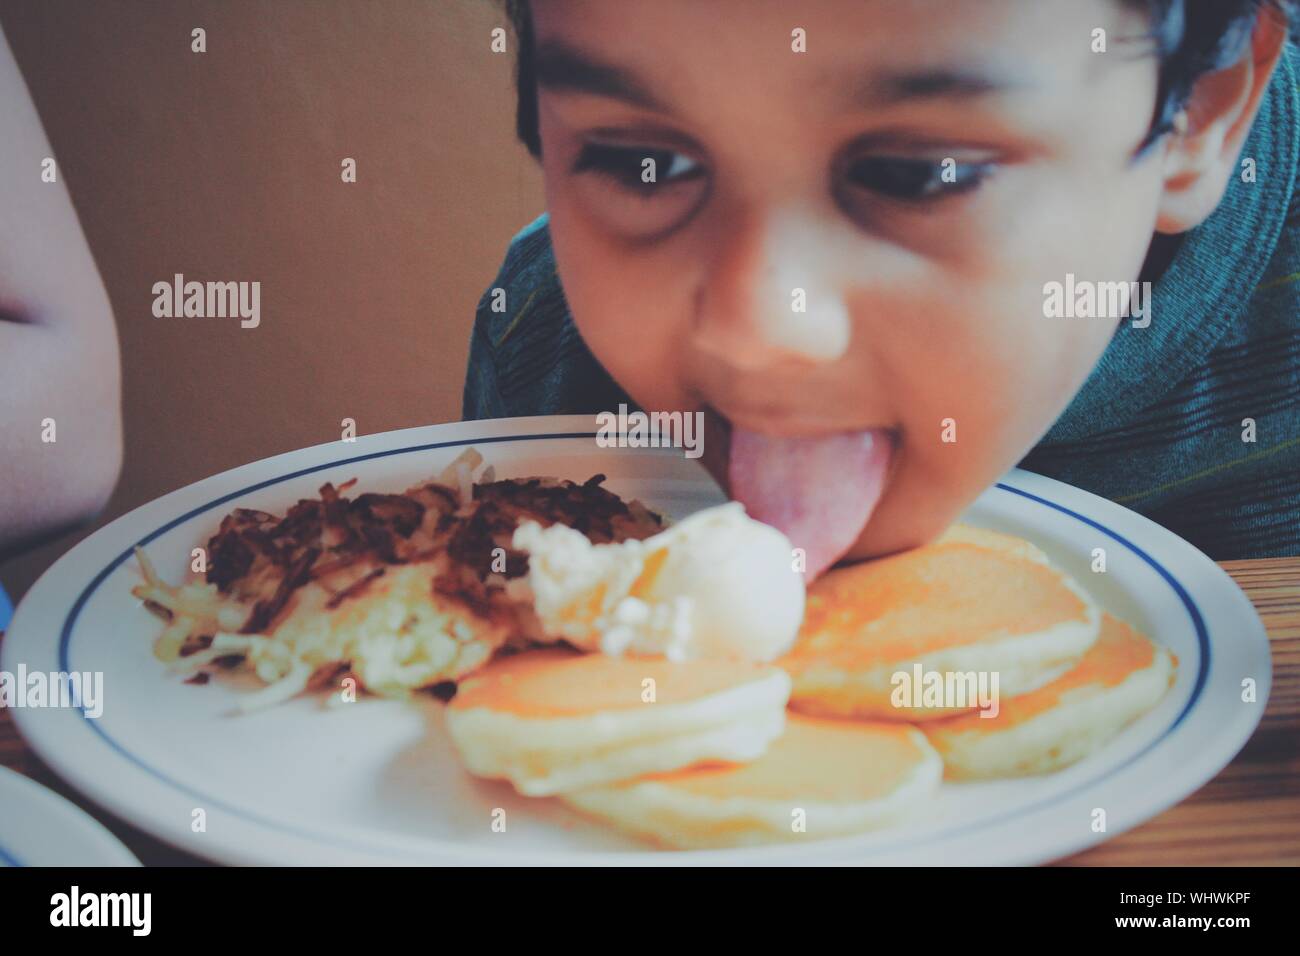 Close-up de chico lindo lamiendo los alimentos en la placa Foto de stock